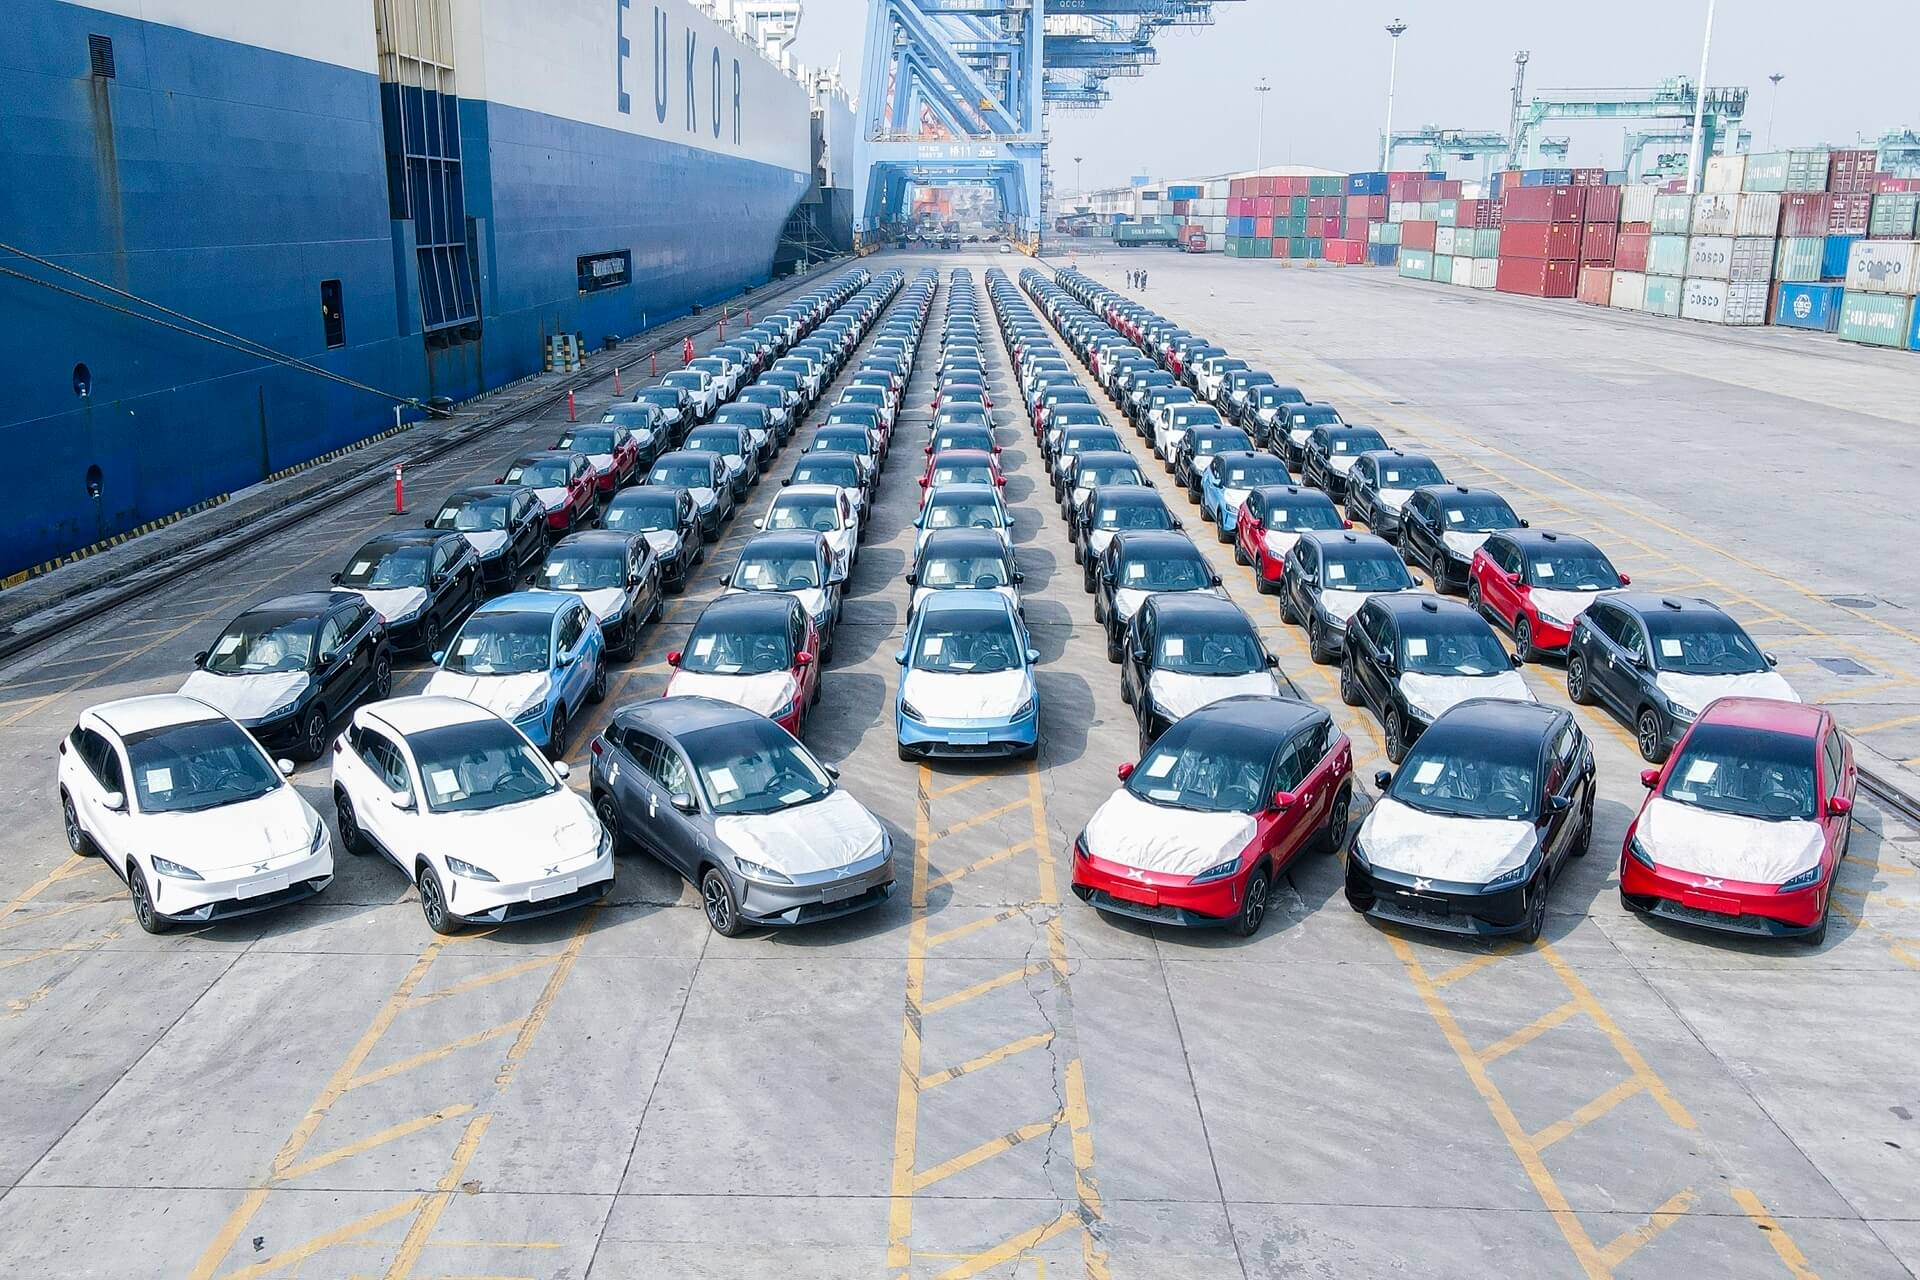 Tragbarer Autos Chirm Großhandelsprodukte zu Fabrikspreisen von Herstellern  in China, Indien, Korea, usw.